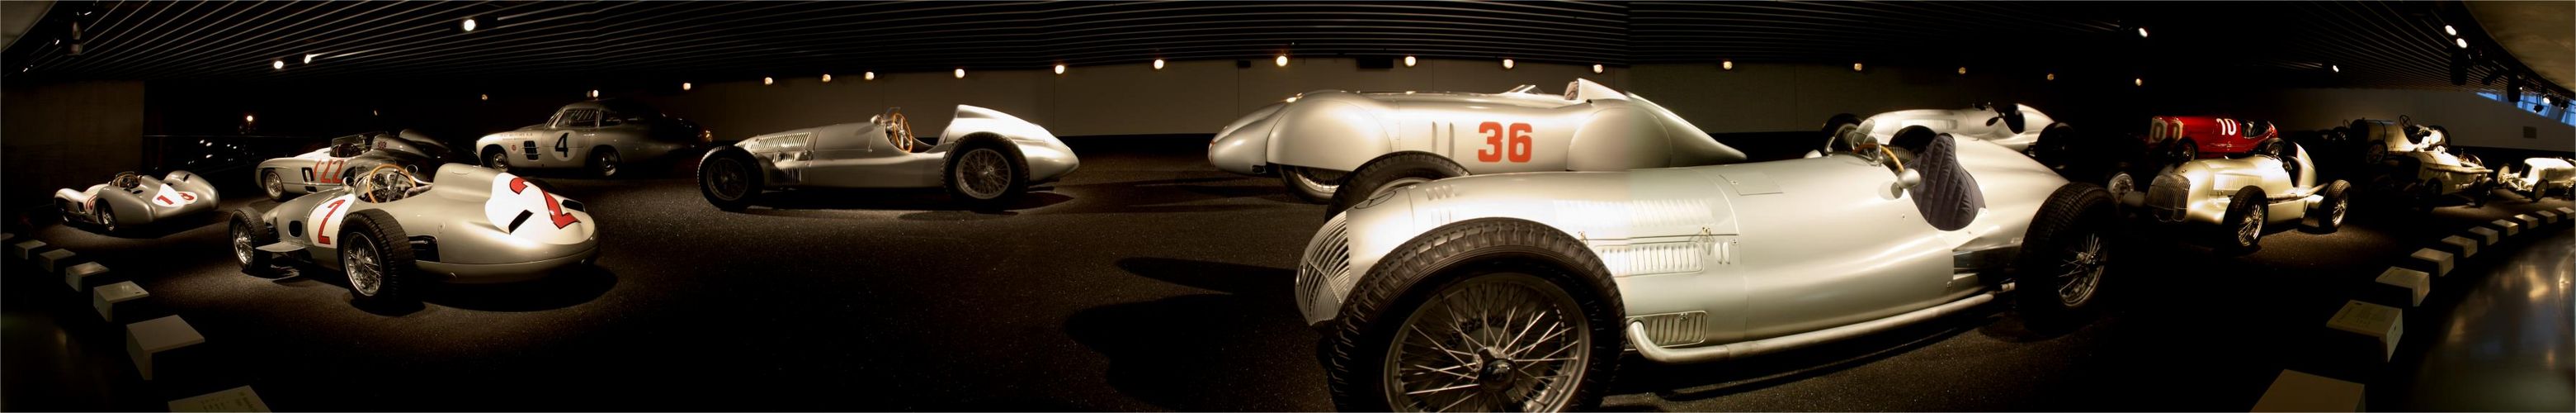 Mercedes Benz Museum - Silberpfeile